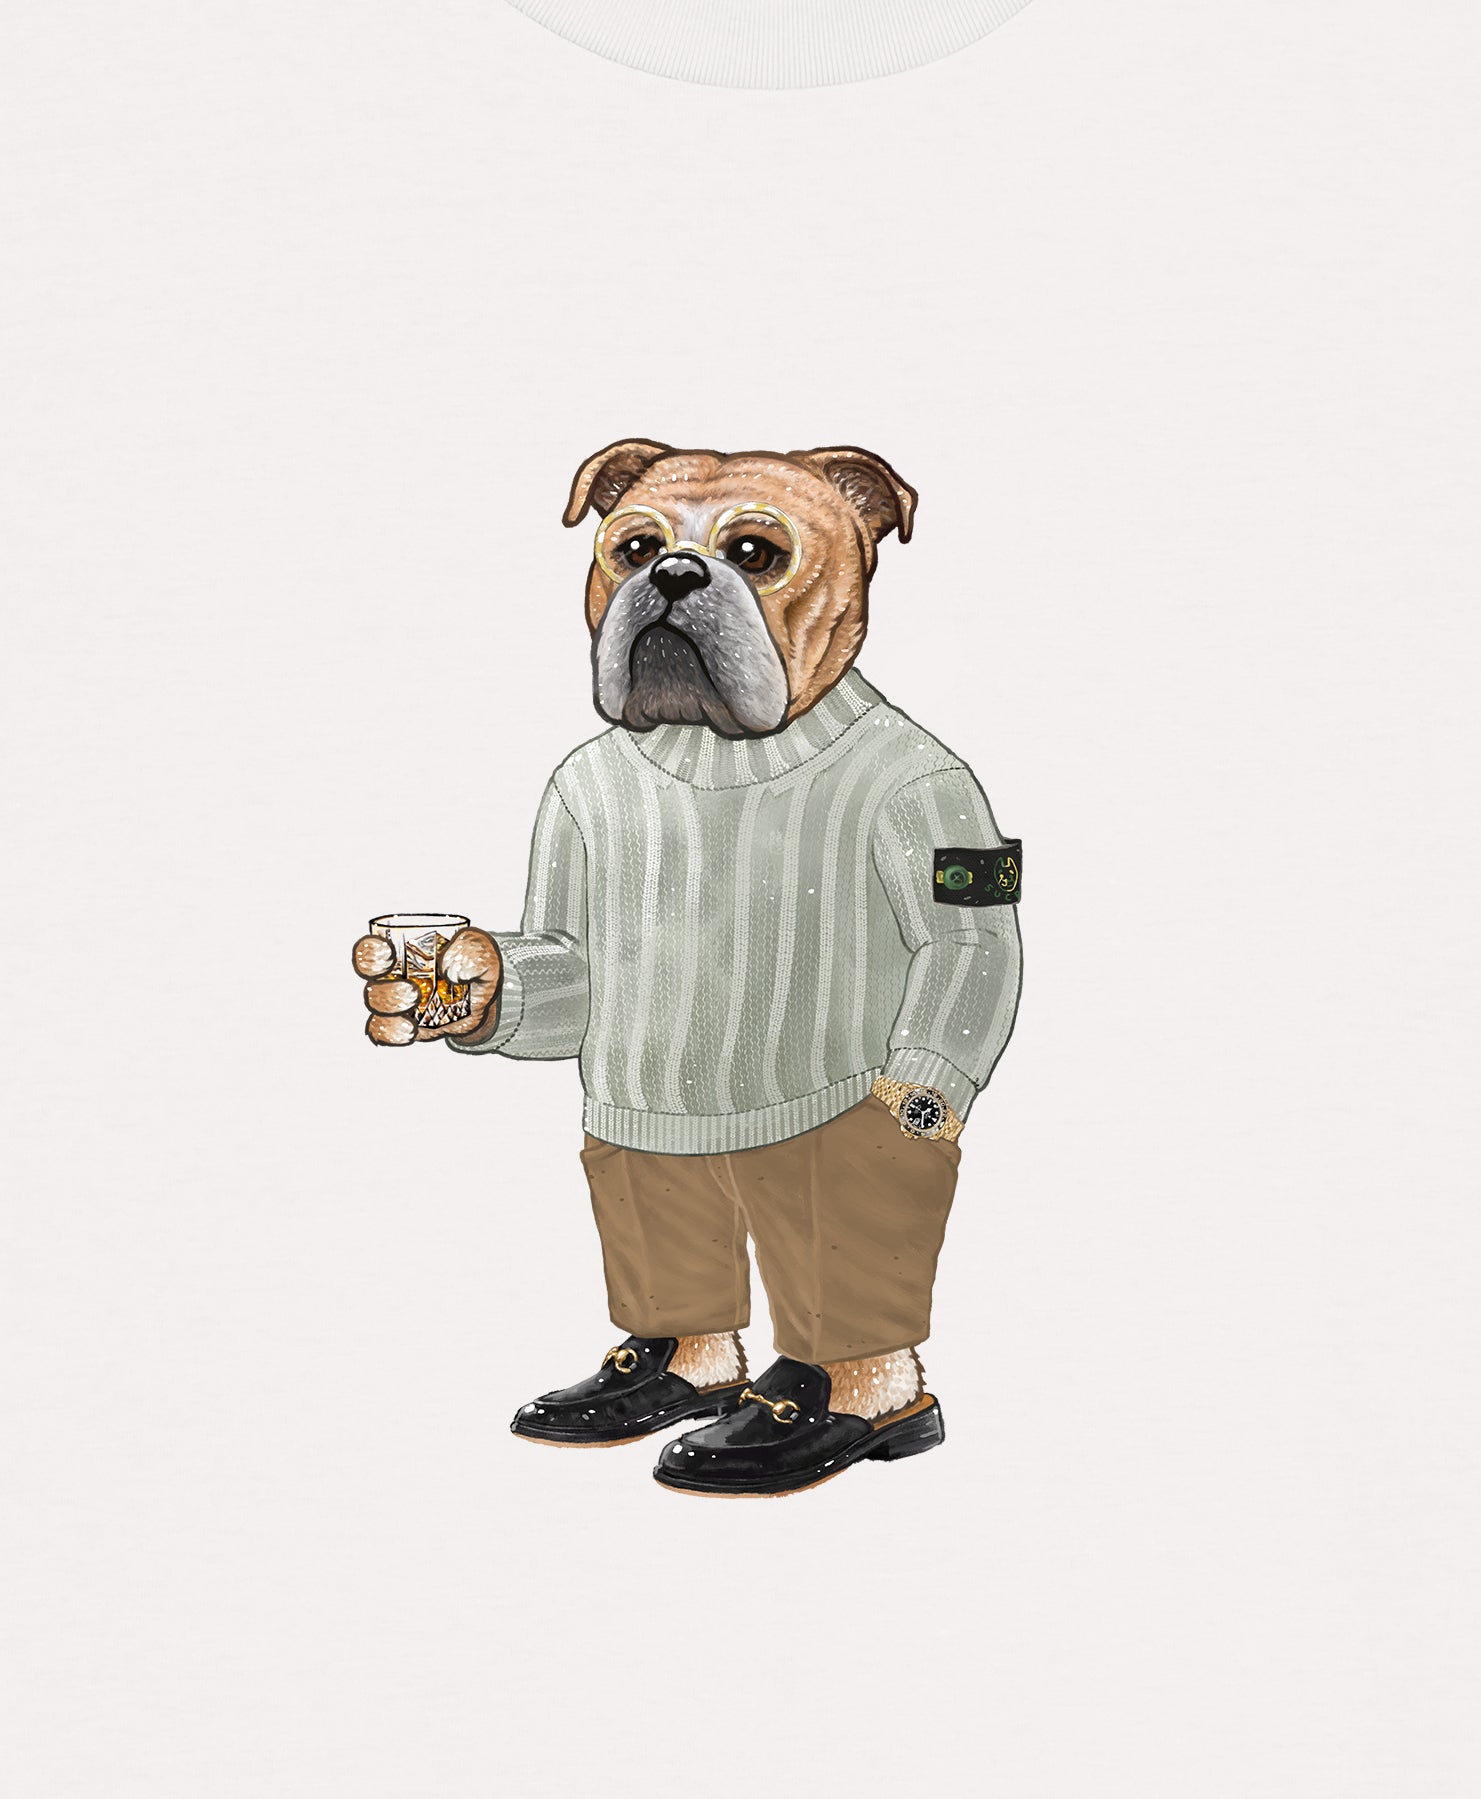 Bulldog "Baller" T-shirt